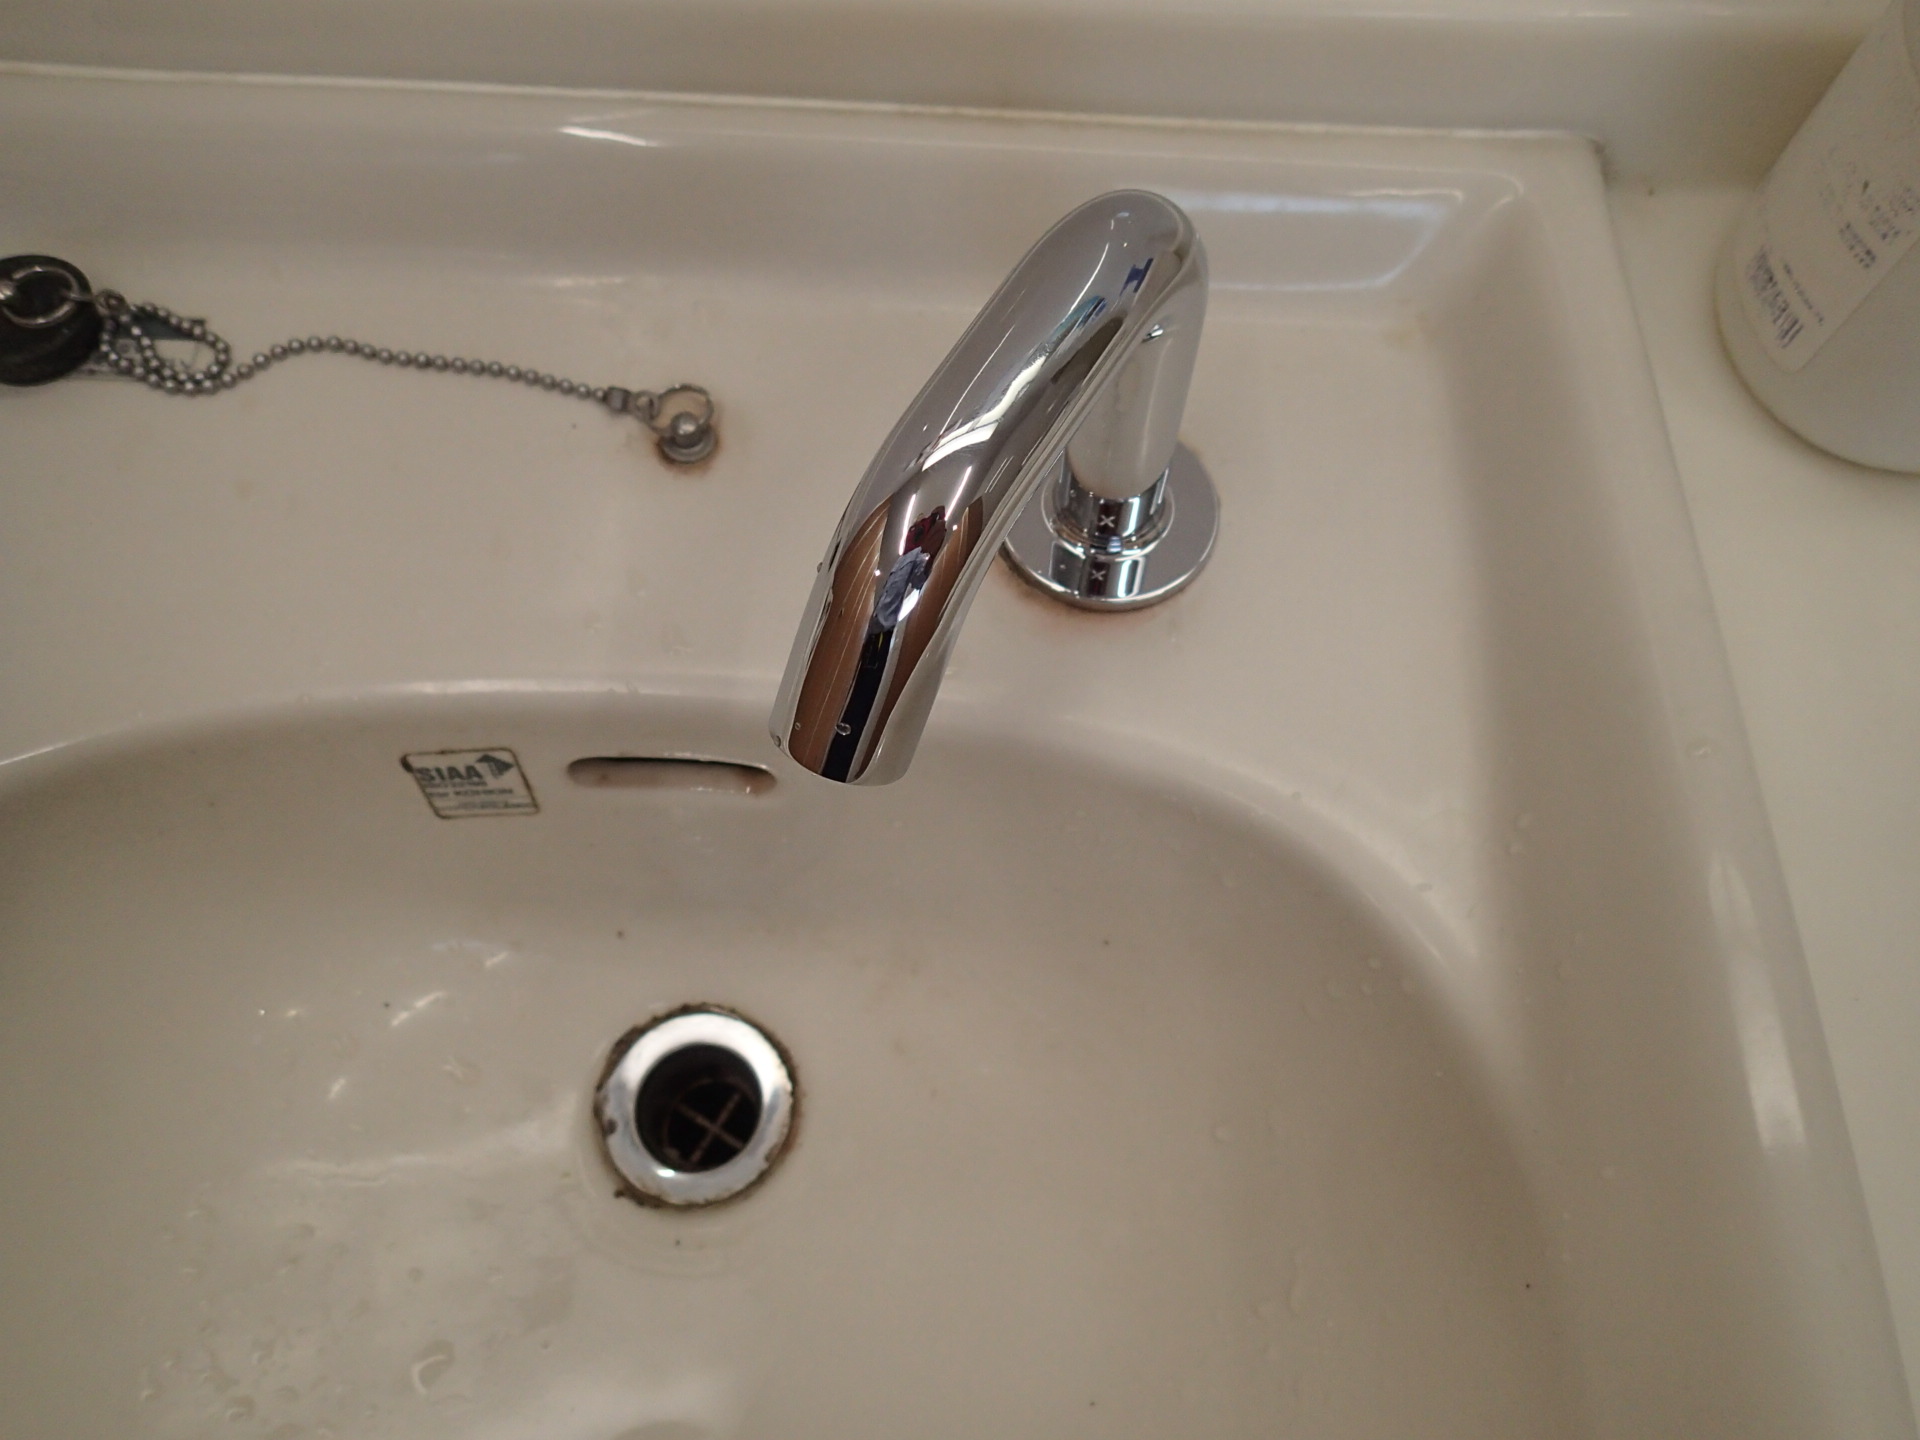 Ｙ様手洗い場水栓金具自動化工事のアイキャッチ画像